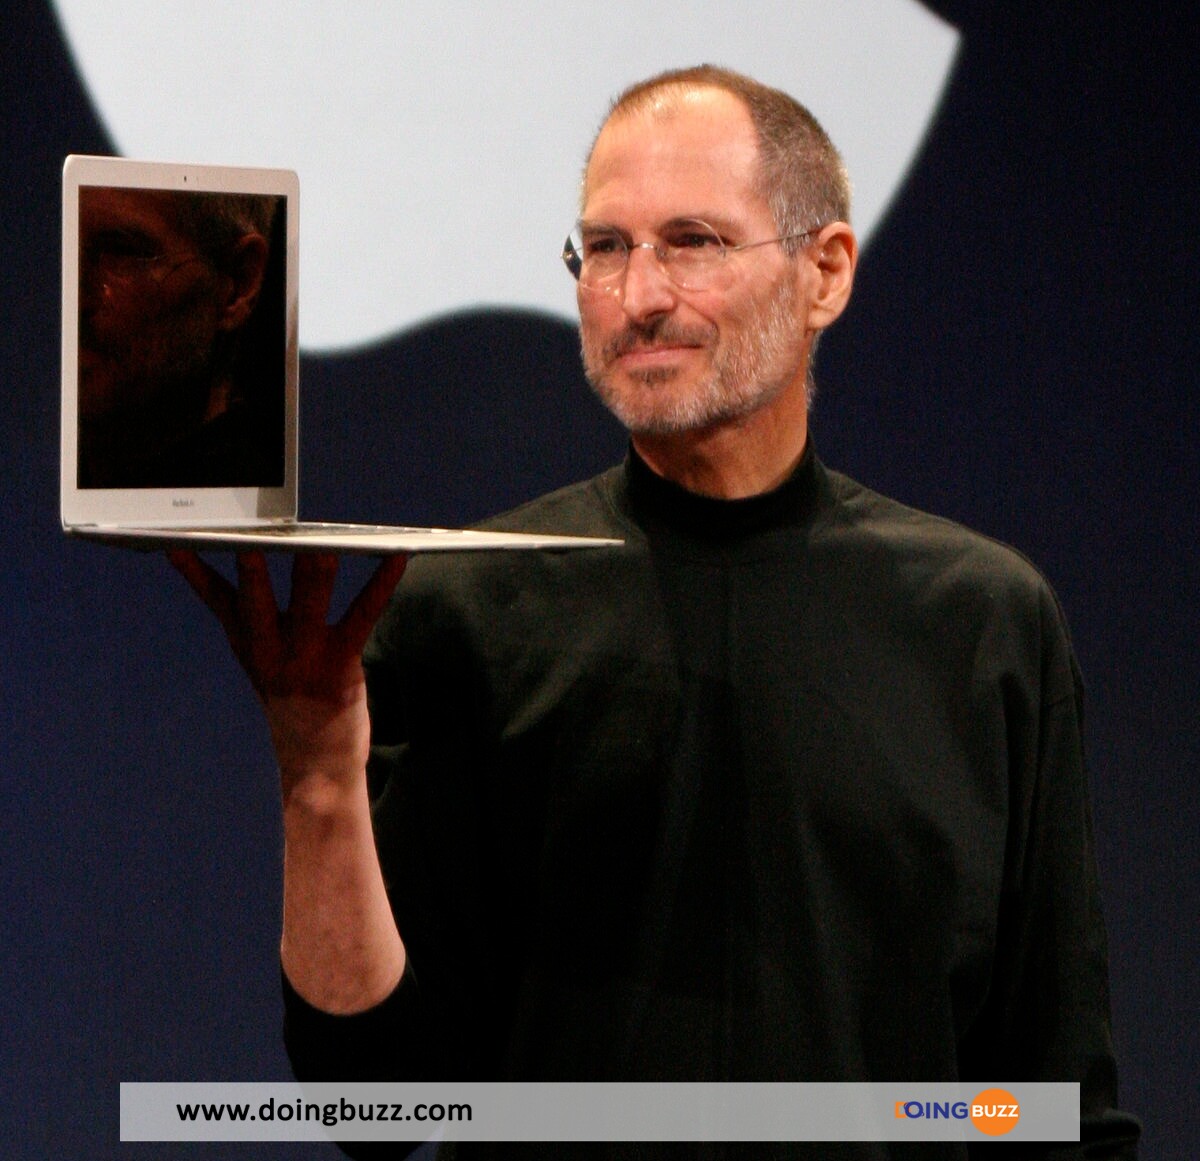 Steve Jobs Doingbuzz